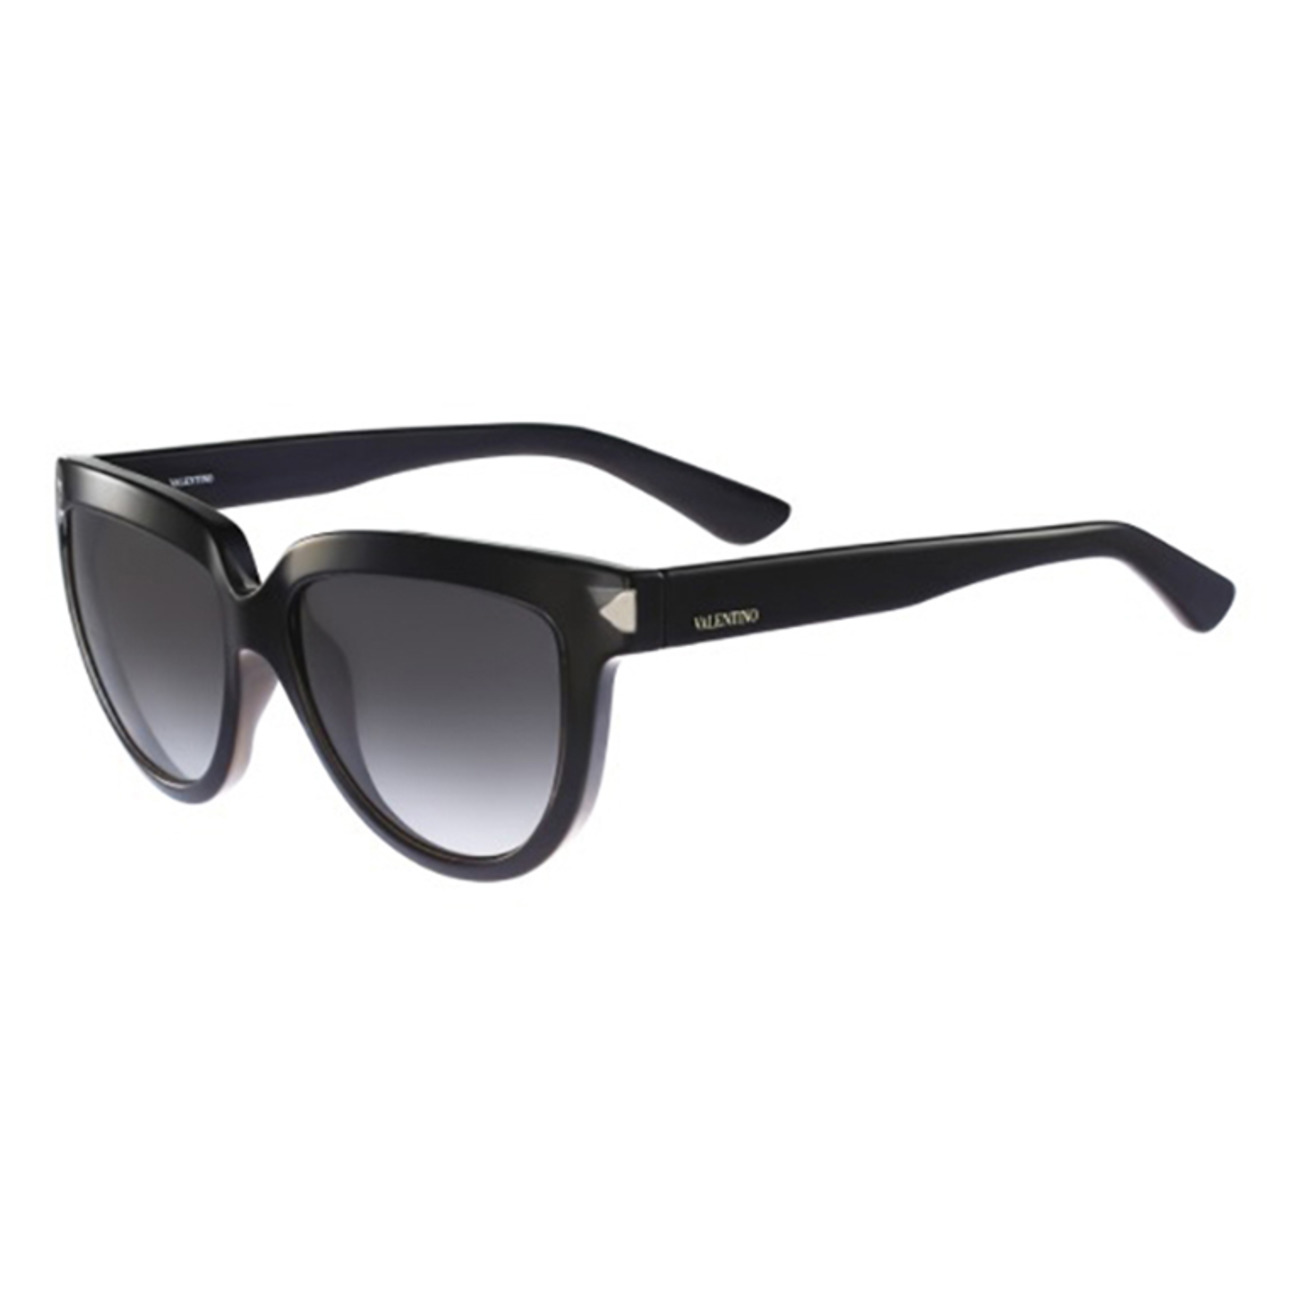 Valentino 'Piano Black' Sunglasses - Black